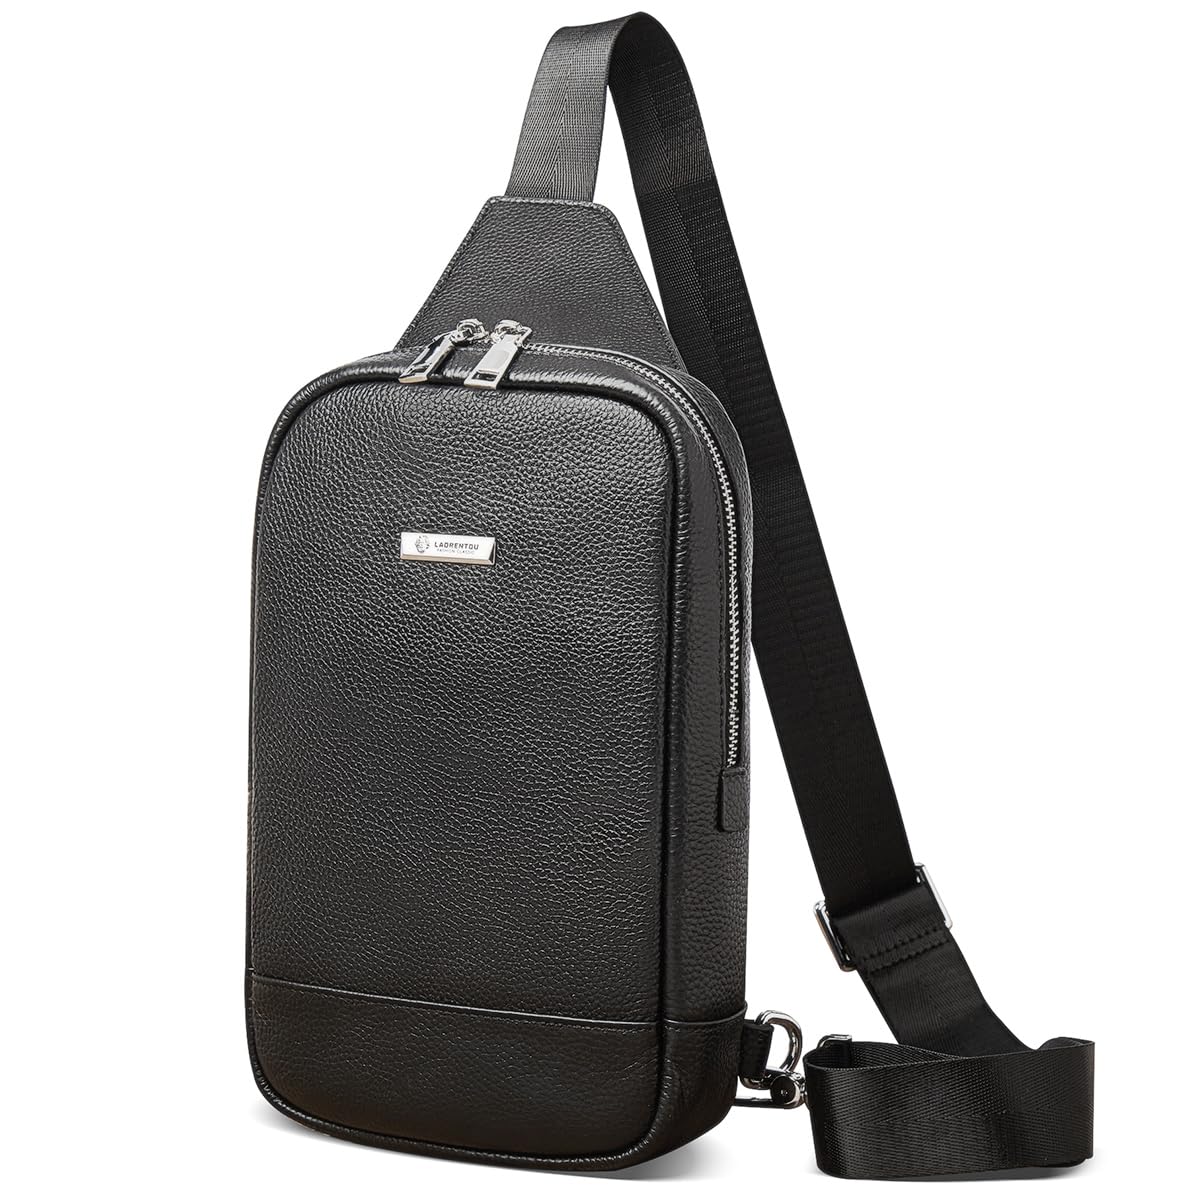 LAORENTOU Crossbody Sling Backpack Packs Sling Bag Travel Hiking Daypack Chest Bag for Men